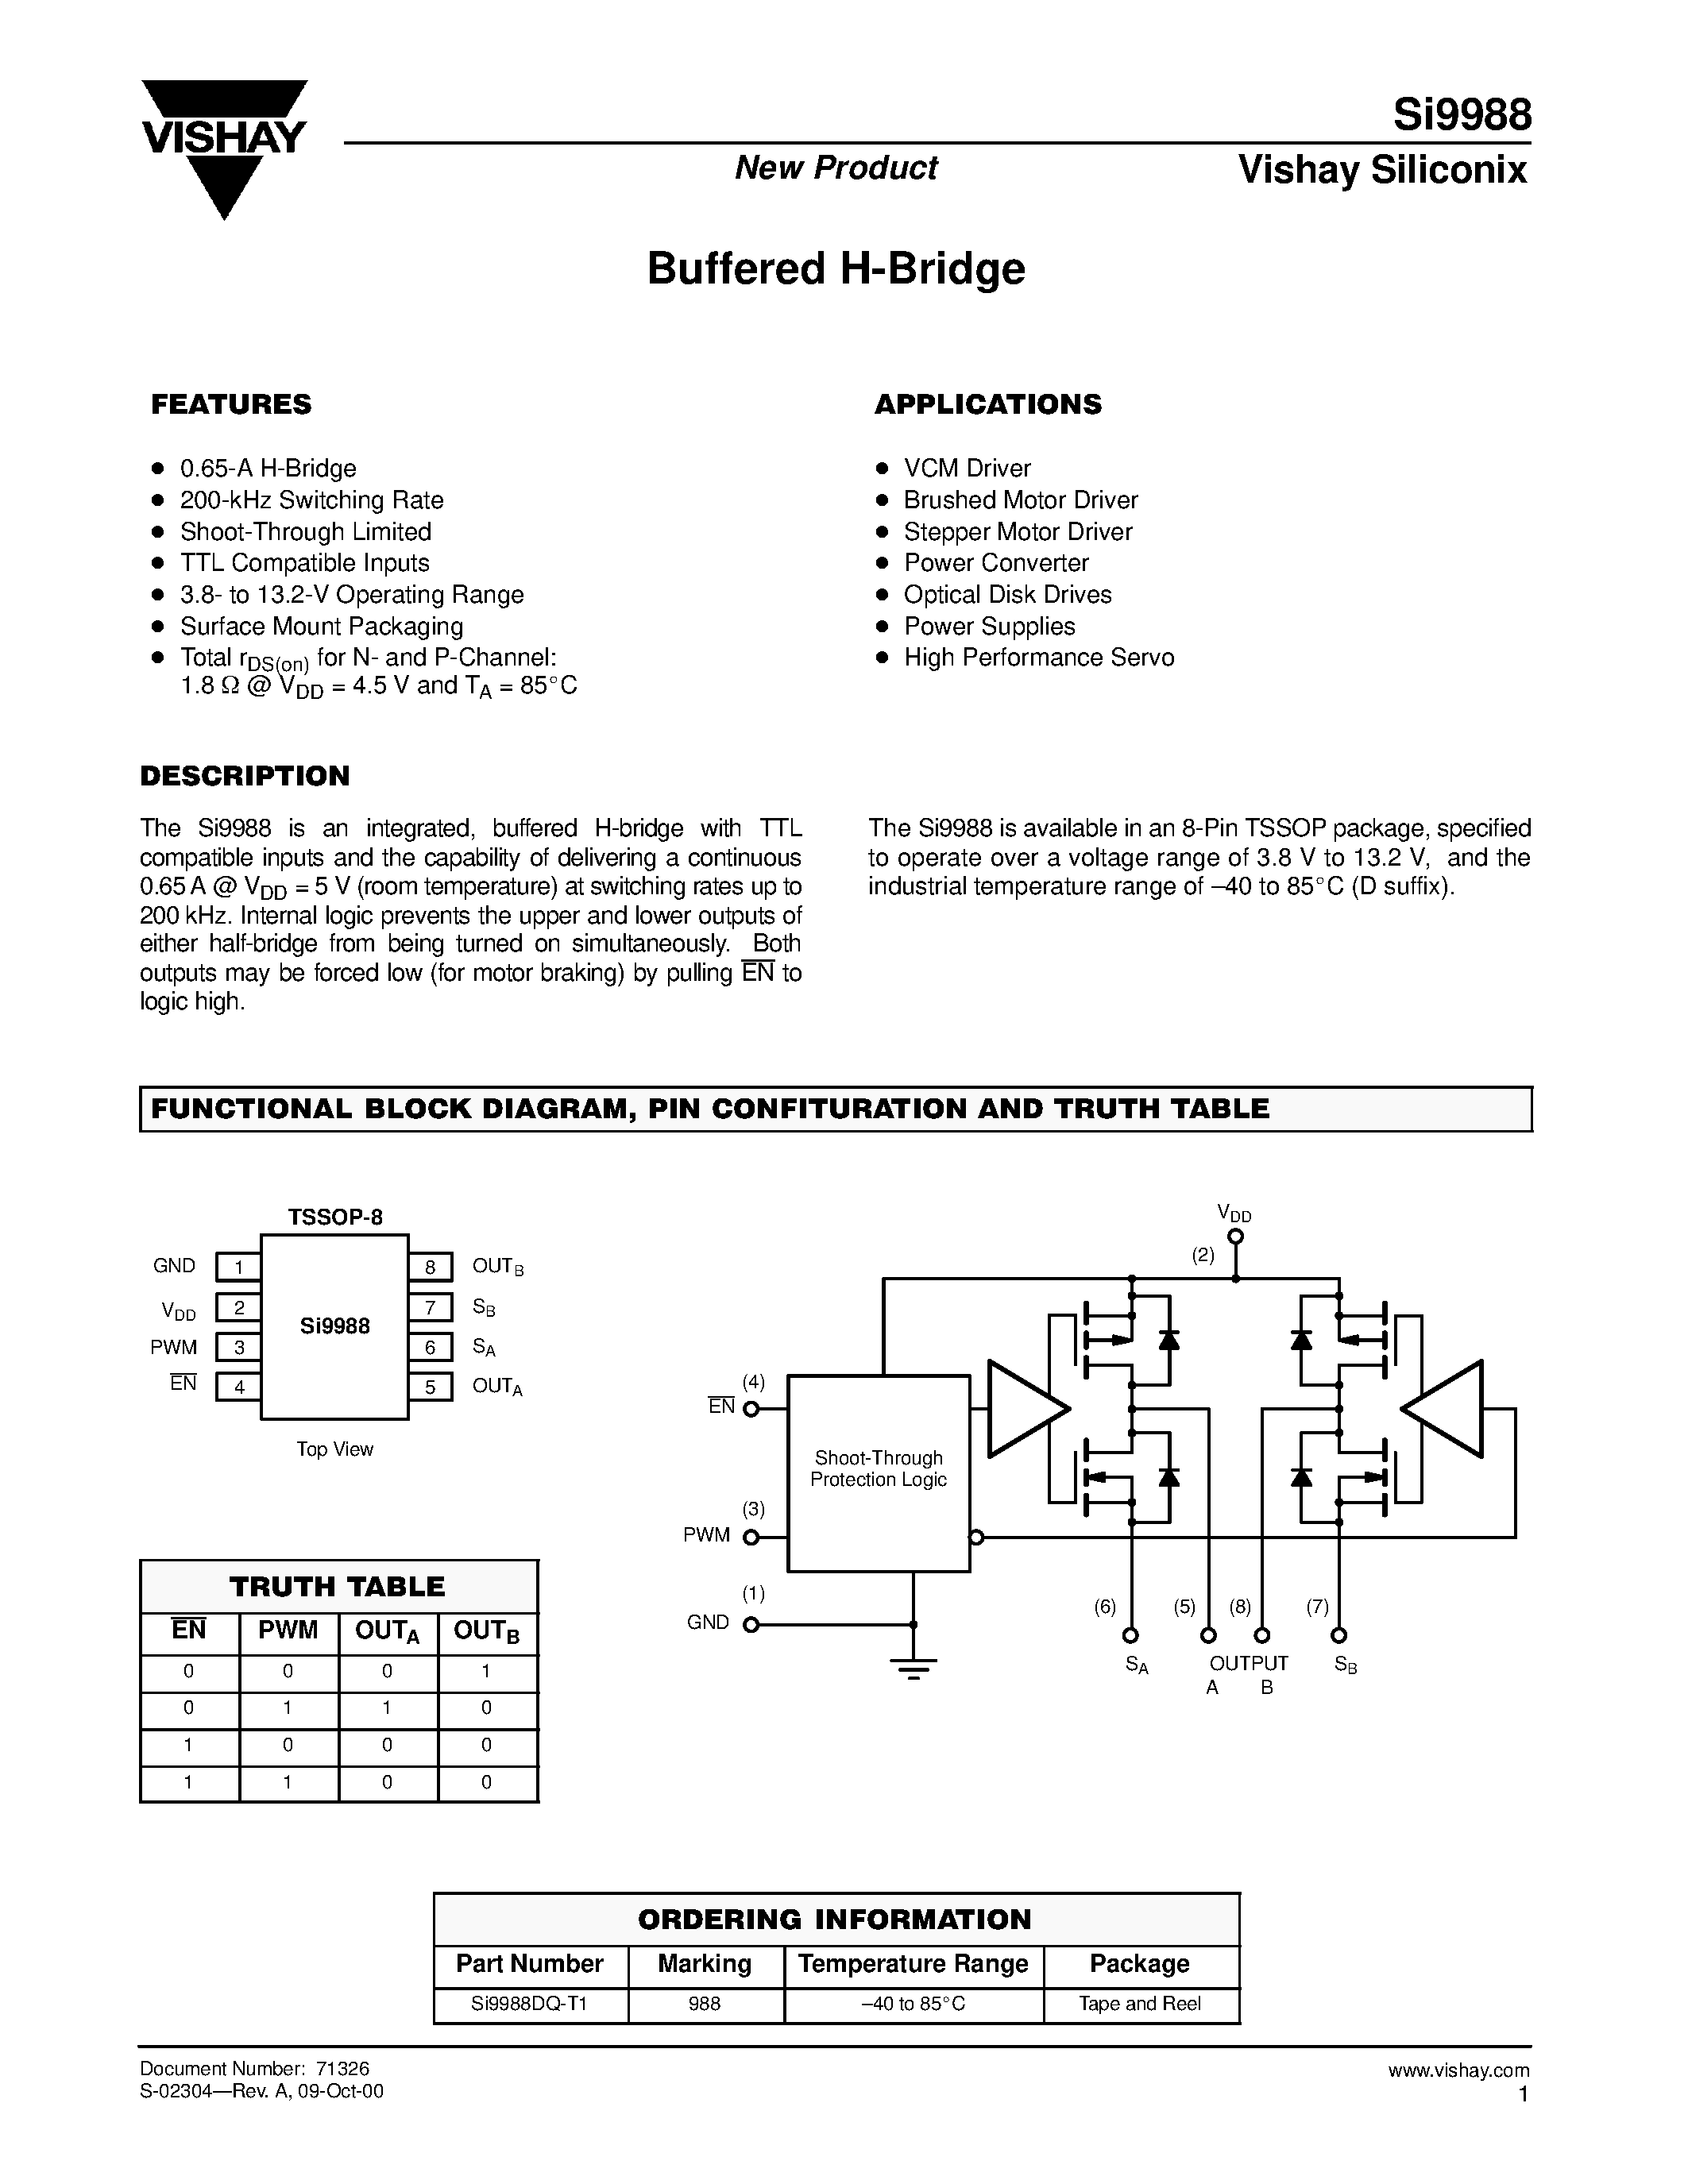 Даташит Si9988DQ-T1 - Buffered H-Bridge страница 1